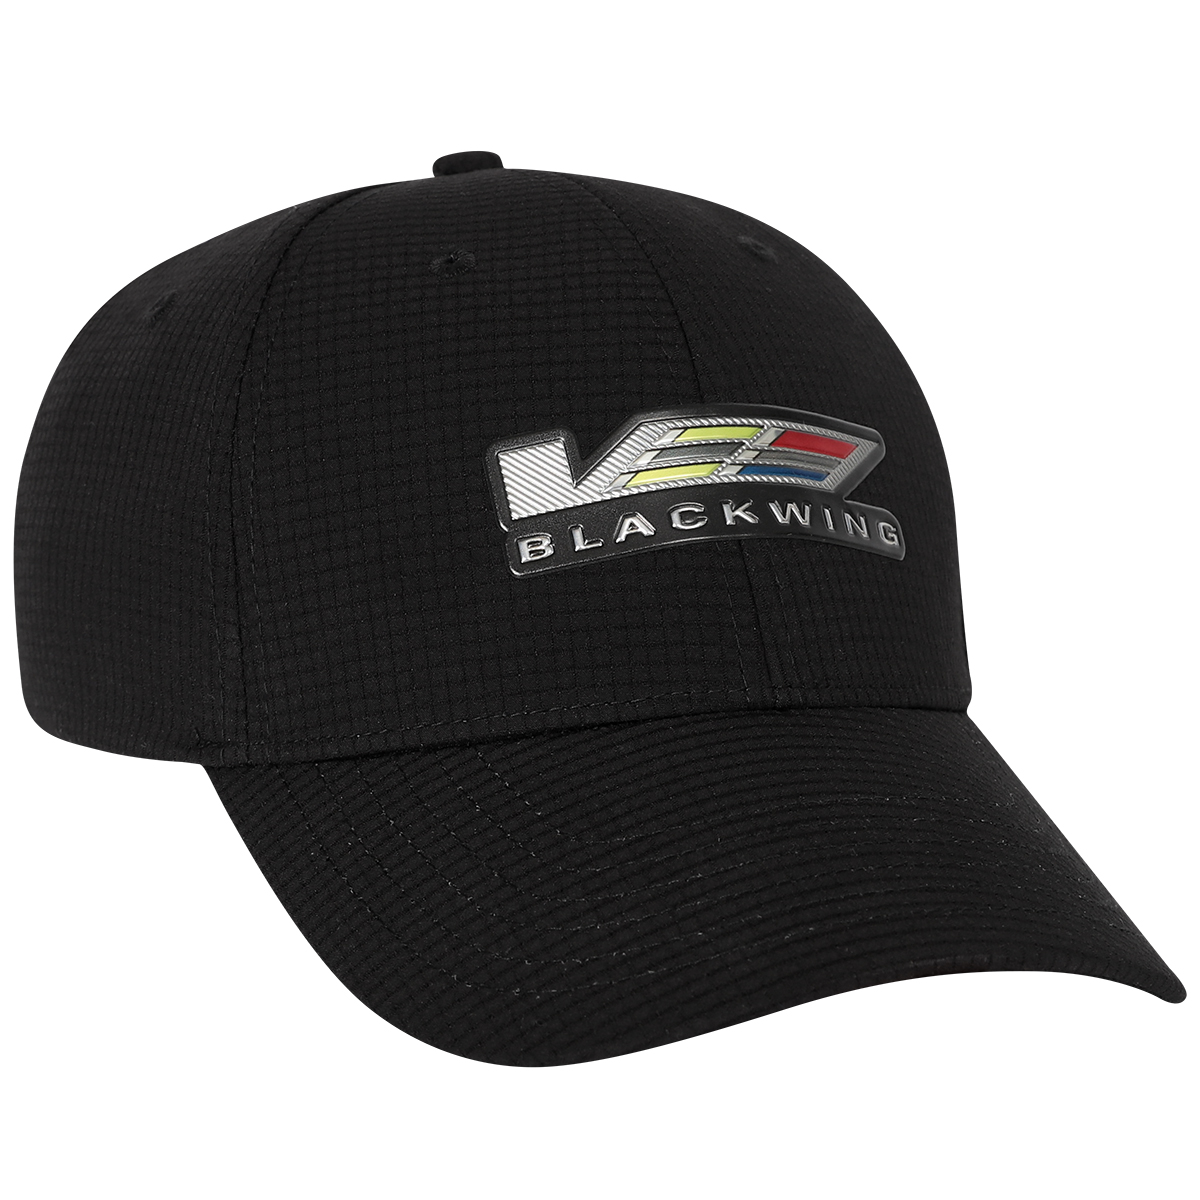 V-Blackwing Grid Cap